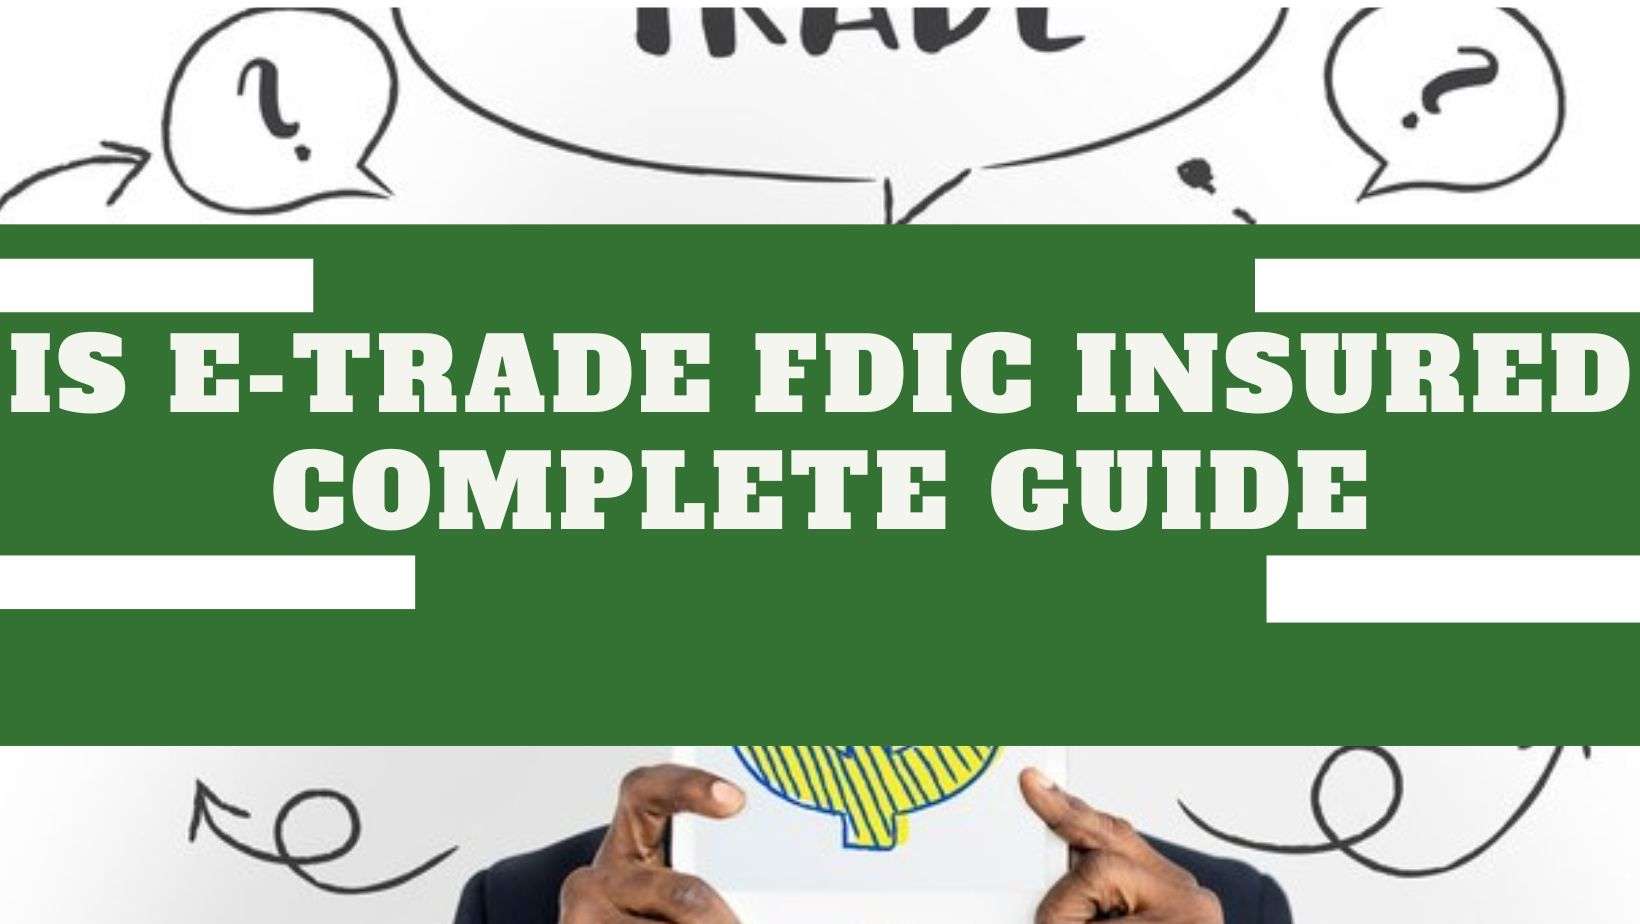 Is-e-trade-fdic-insured